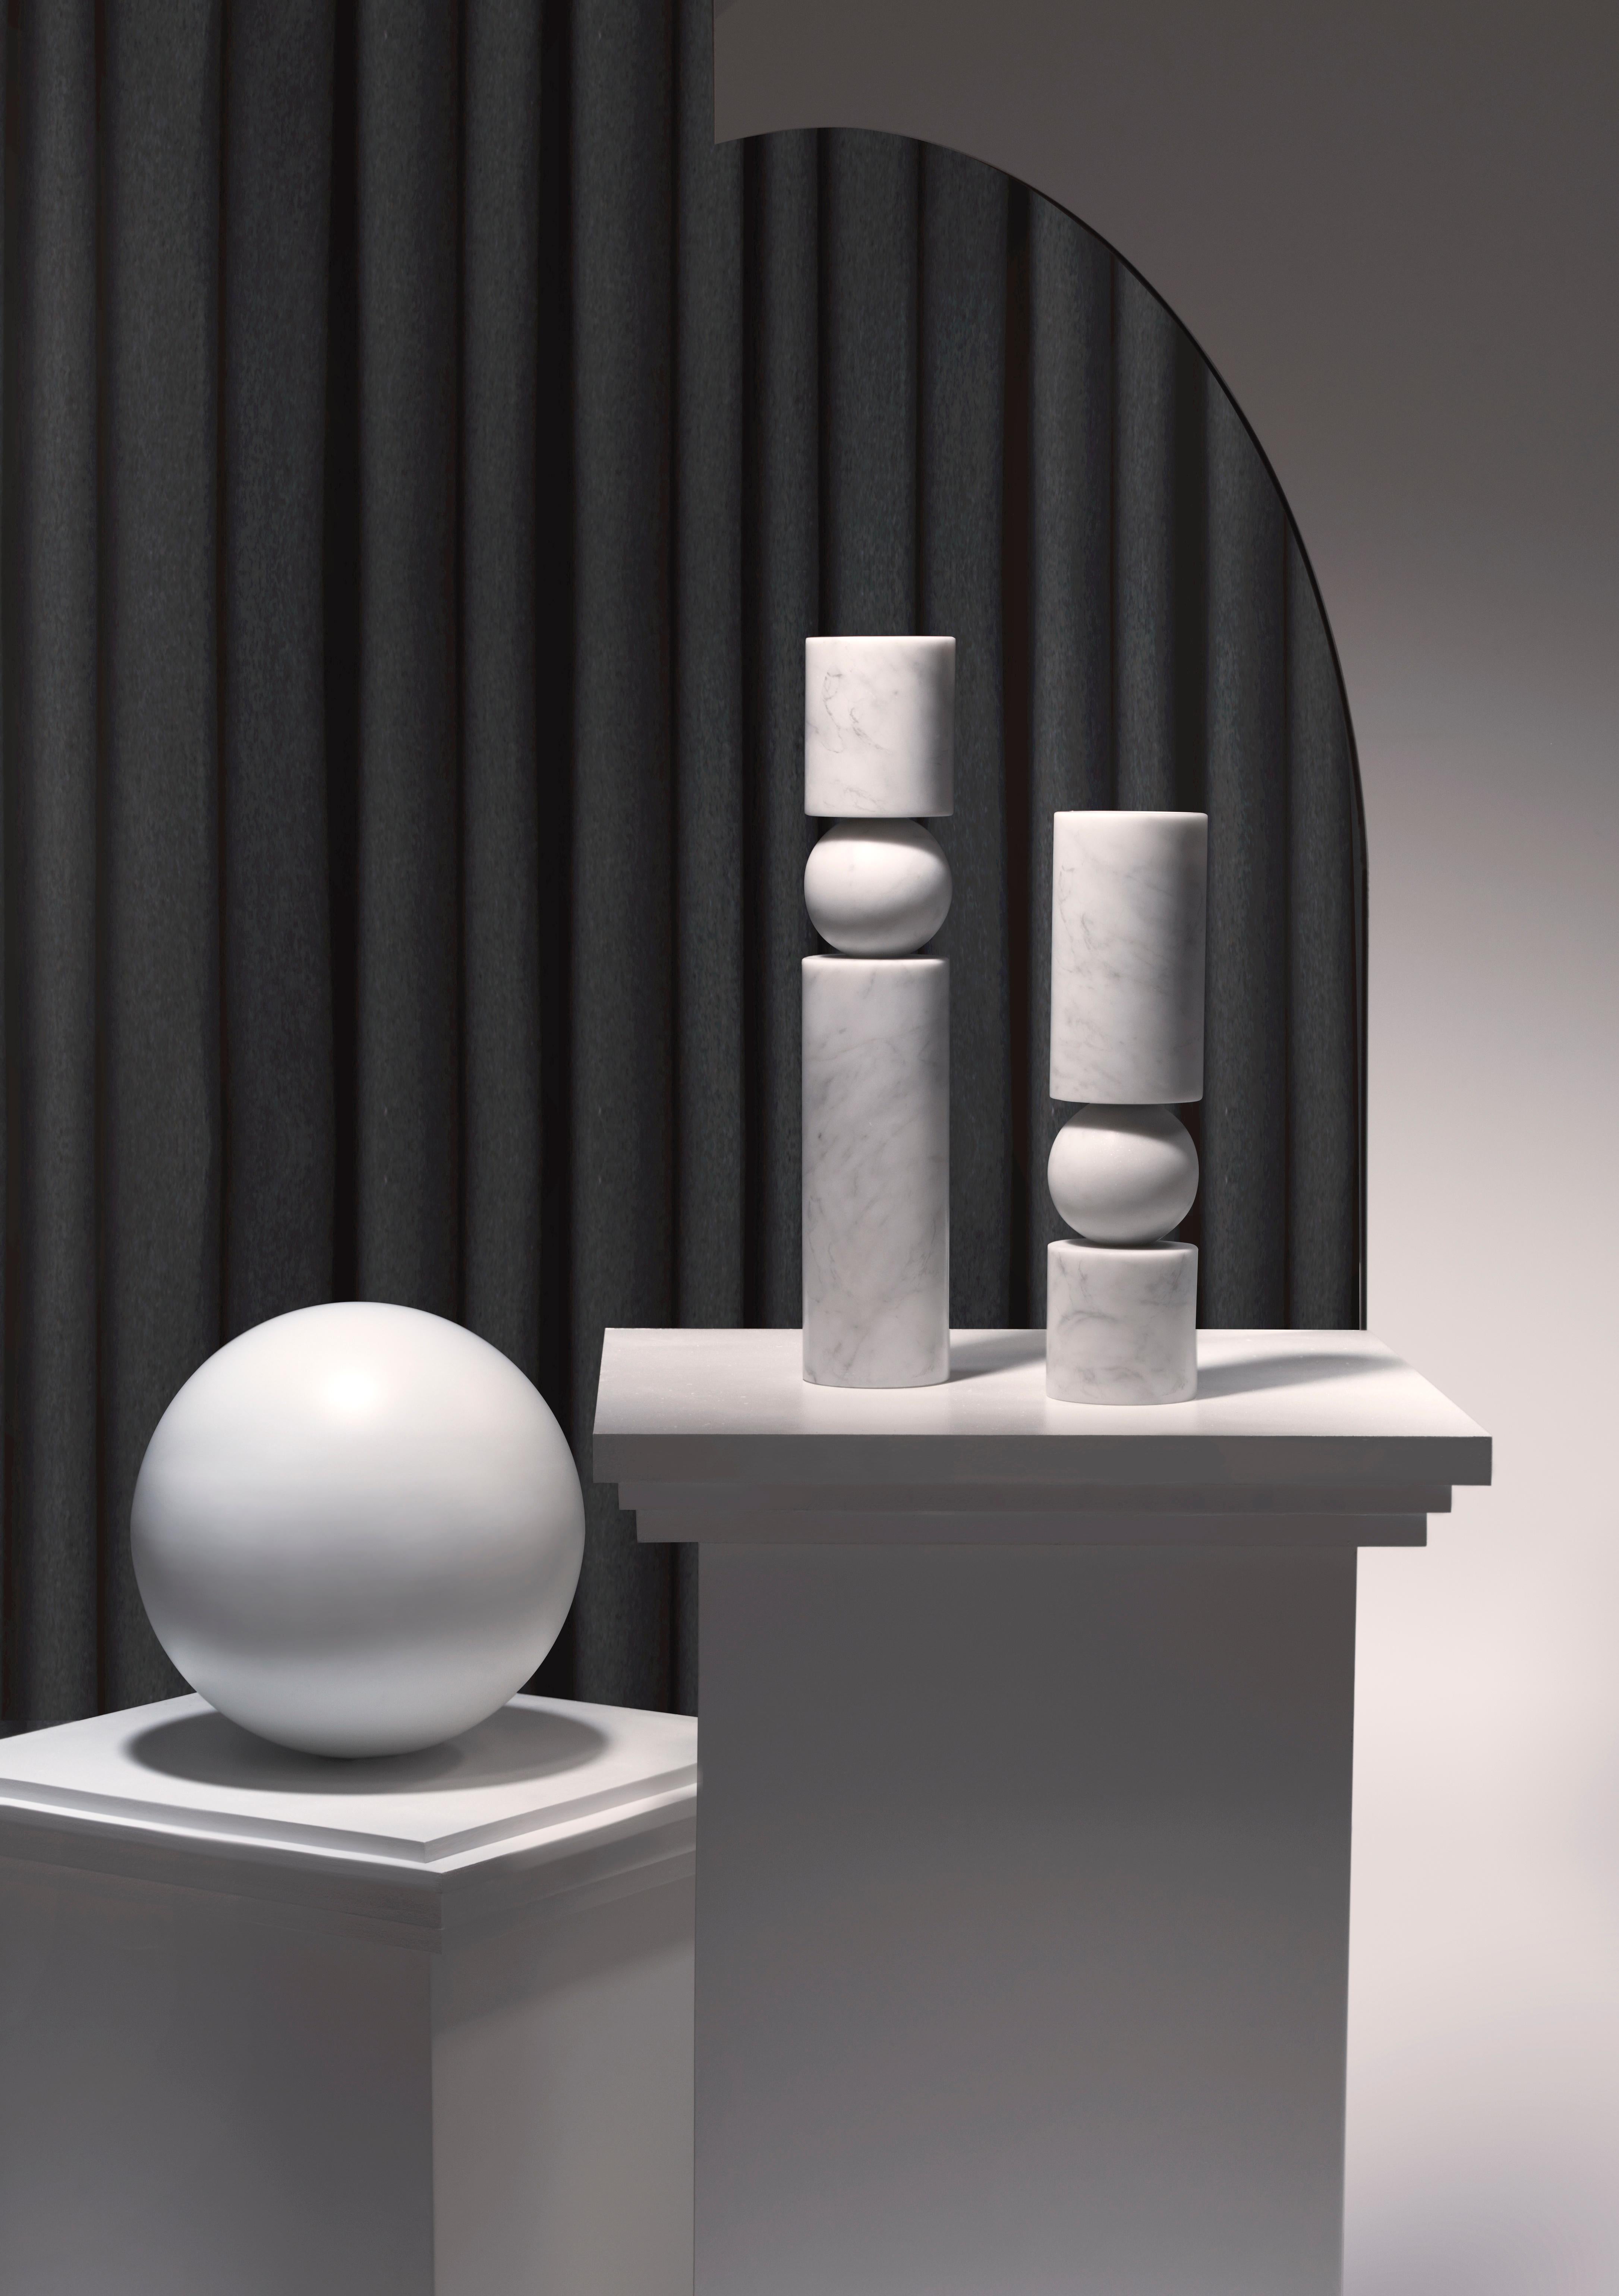 Fulcrum ist ein skulpturaler, monolithischer Kerzenständer, dessen zylindrischer Schaft auf einer zentralen Kugel zu balancieren scheint, und spielt mit dem Konzept von Drehpunkten und Stützen. 

Inklusive großer klarer Tasse Teelicht Kerze.